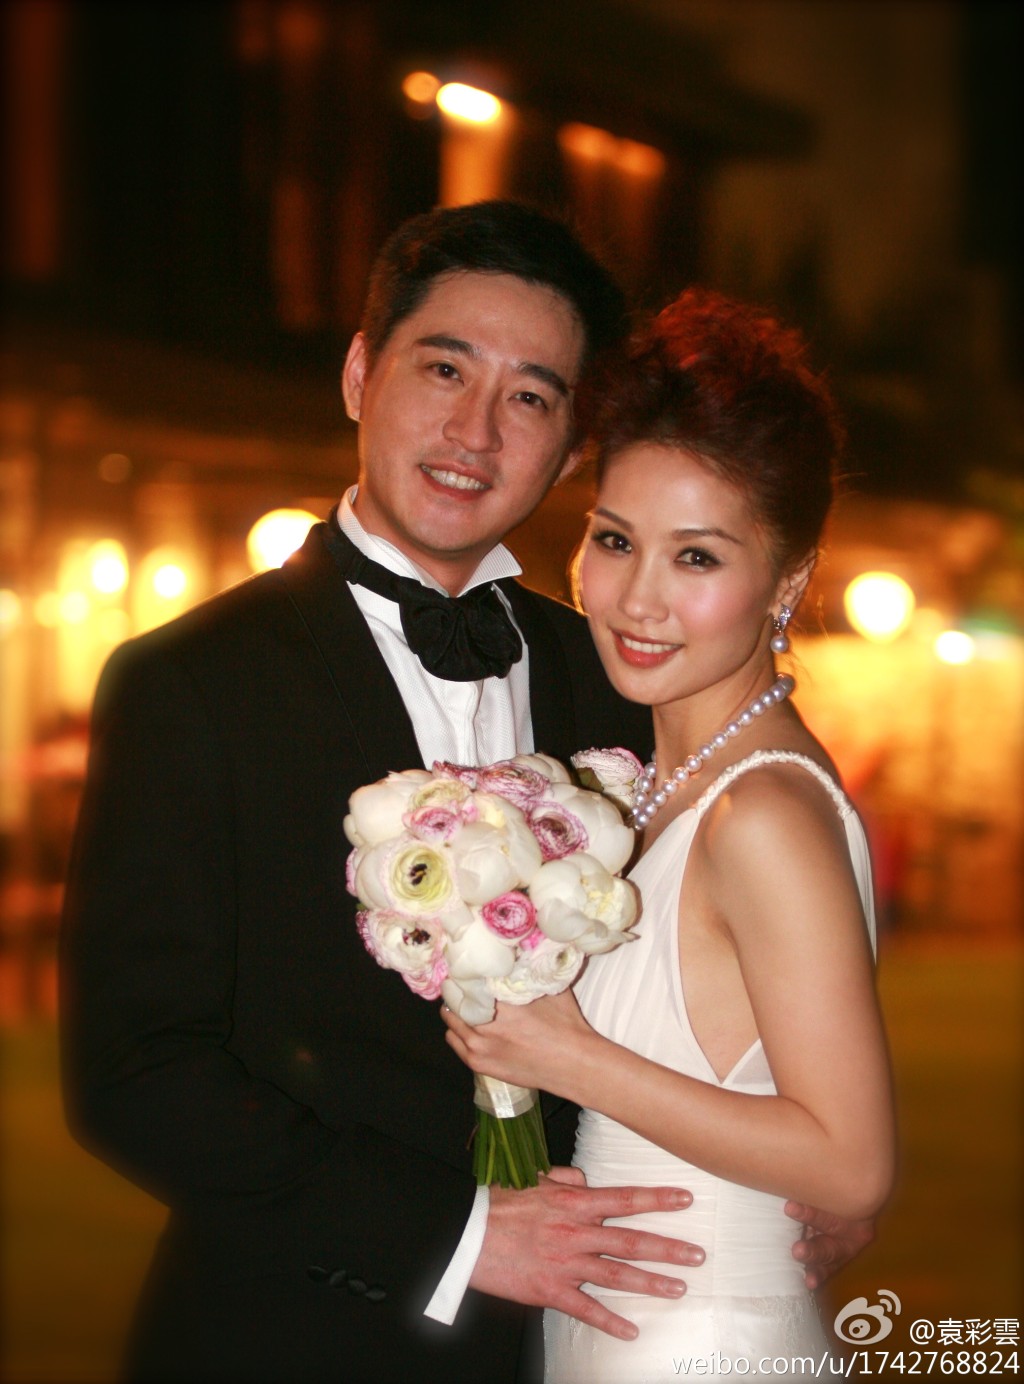 袁彩雲在2009年與飲食界商人江銘峯（Anthony）結婚。